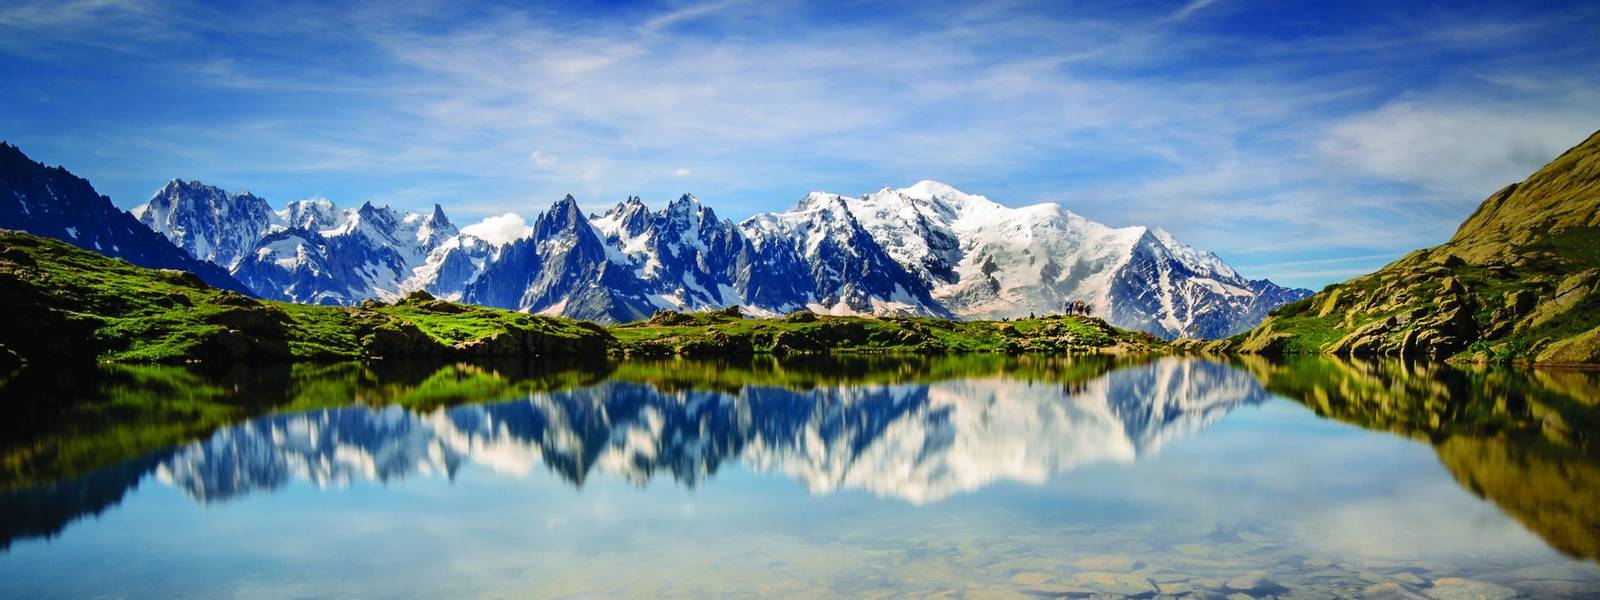 La Blanc, Chamonix-Mont Blanc